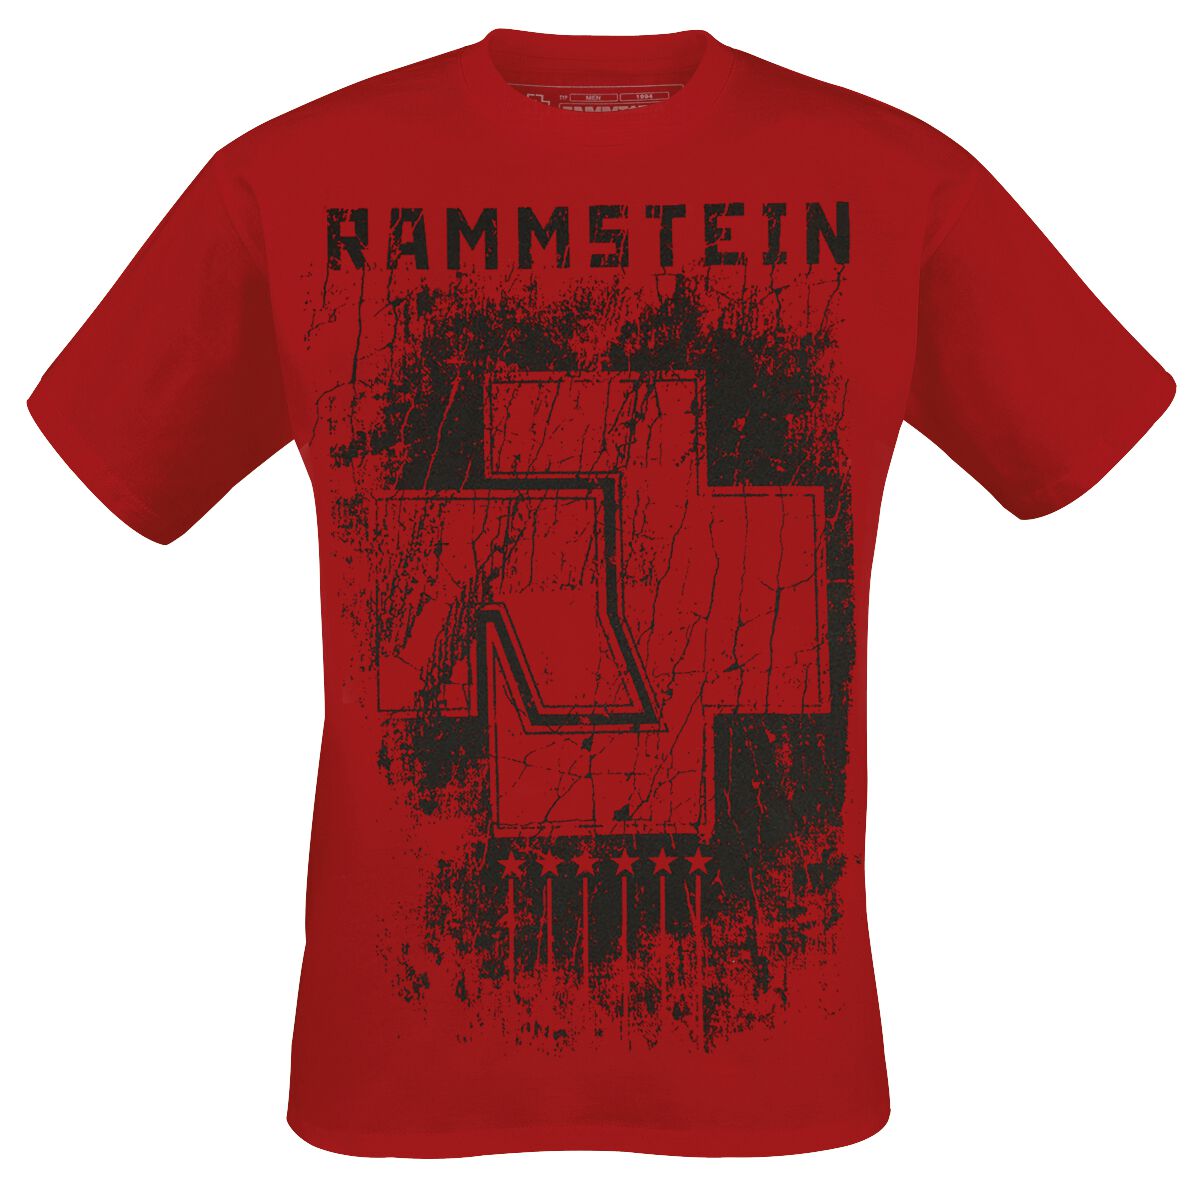 Rammstein T-Shirt - 6 Herzen - S bis XXL - für Männer - Größe S - rot  - Lizenziertes Merchandise!